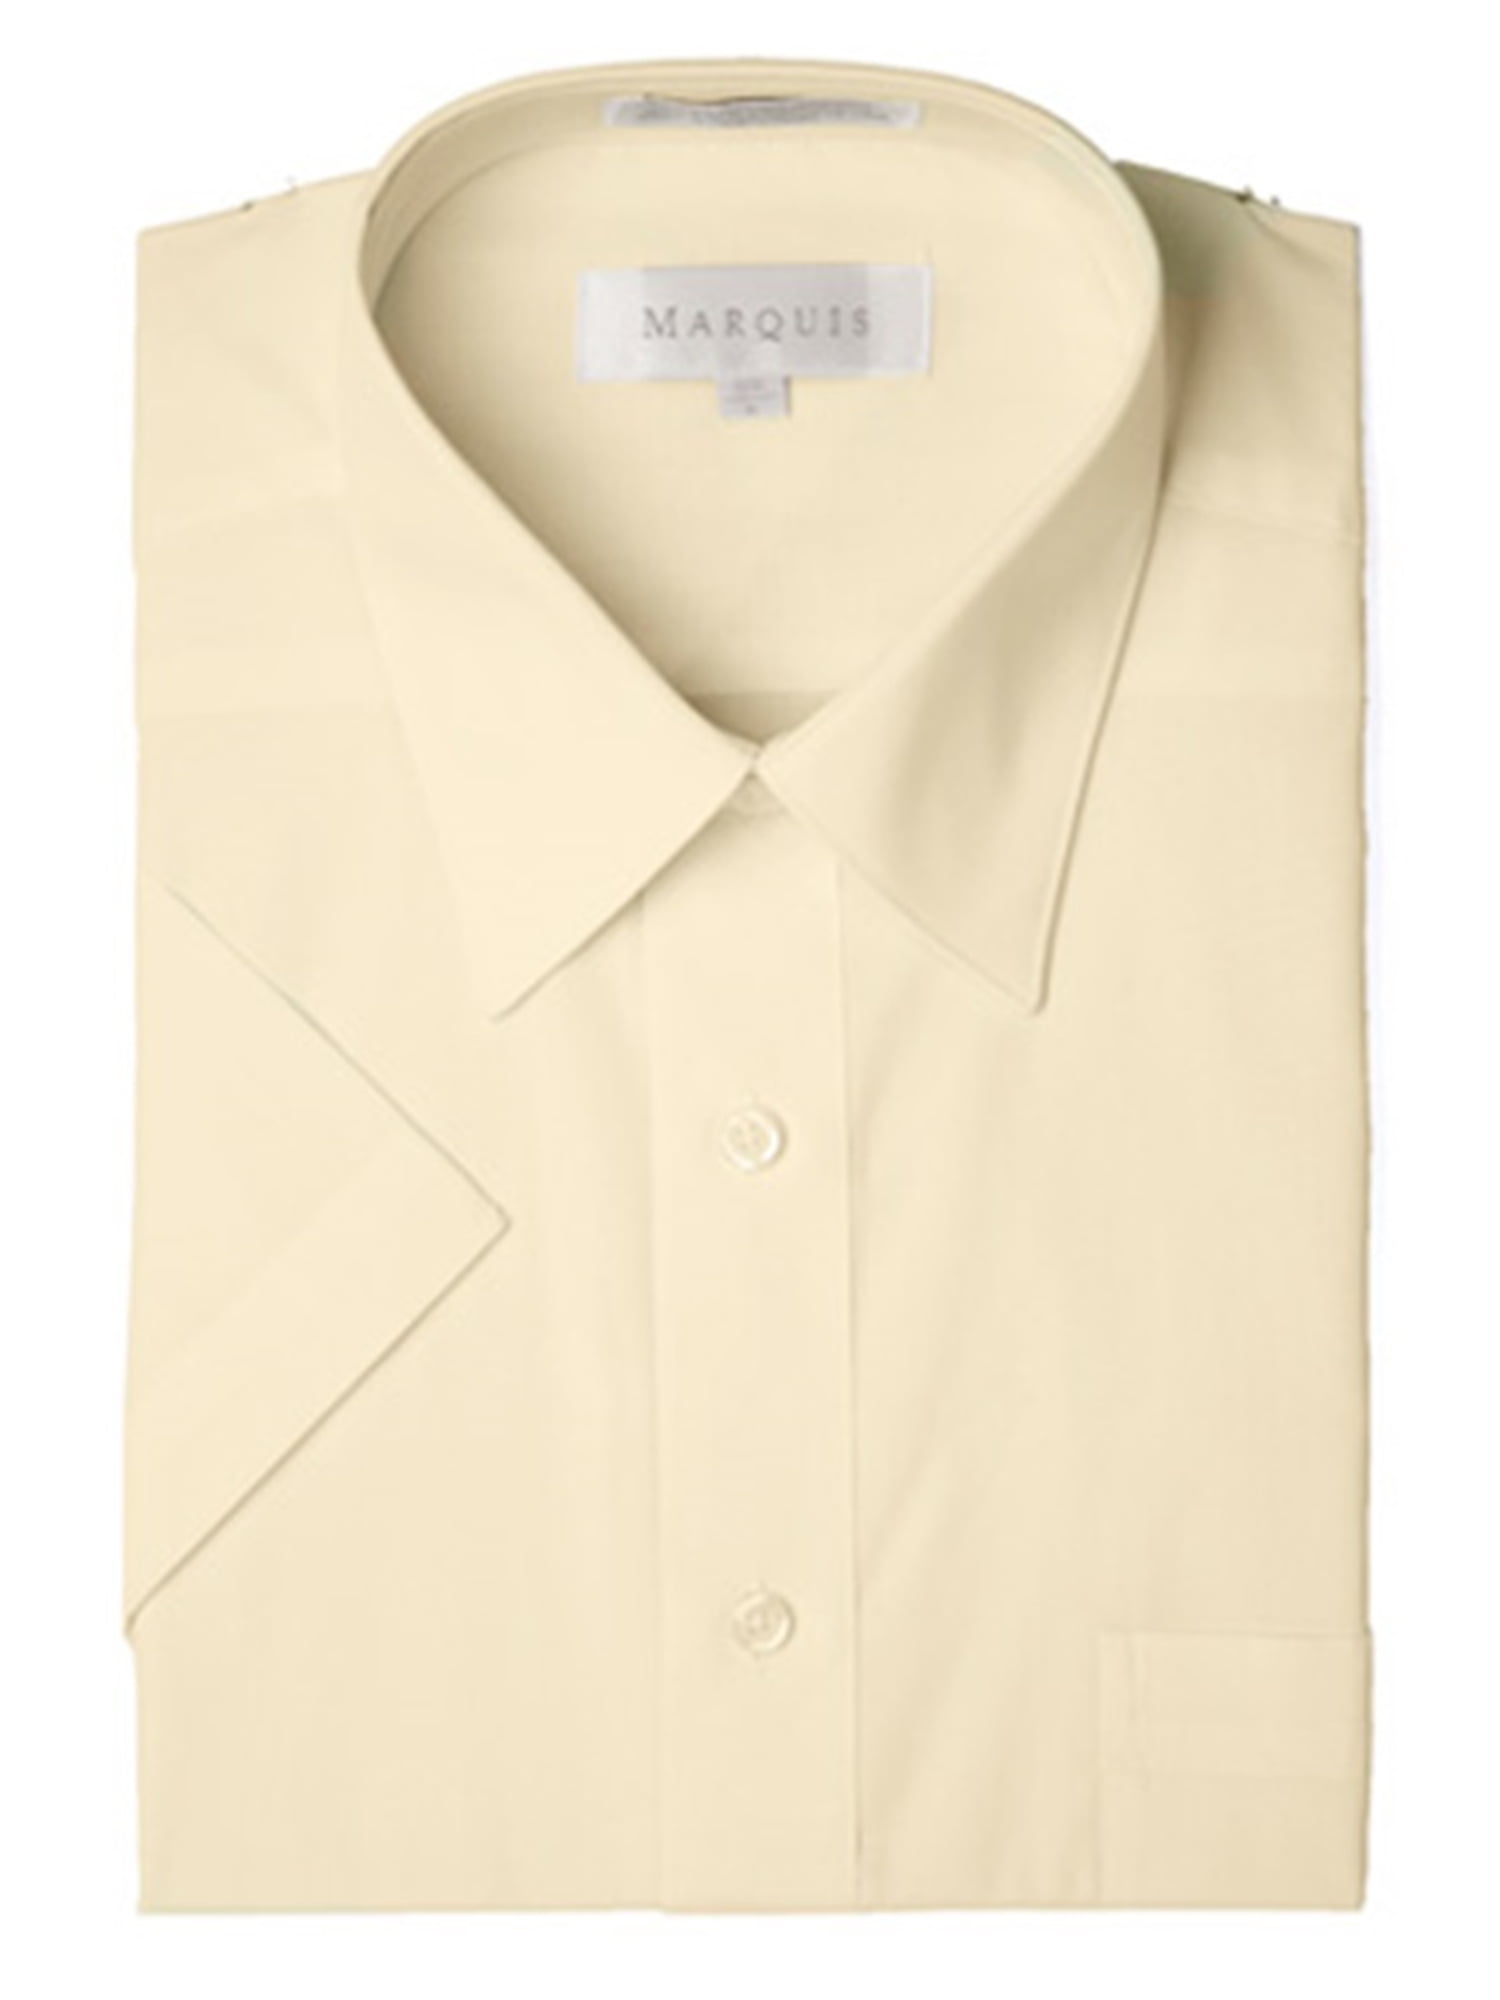 Marquis Men's Soft Butter Yellow Short Sleeve Regular Fit Dress shirt ...